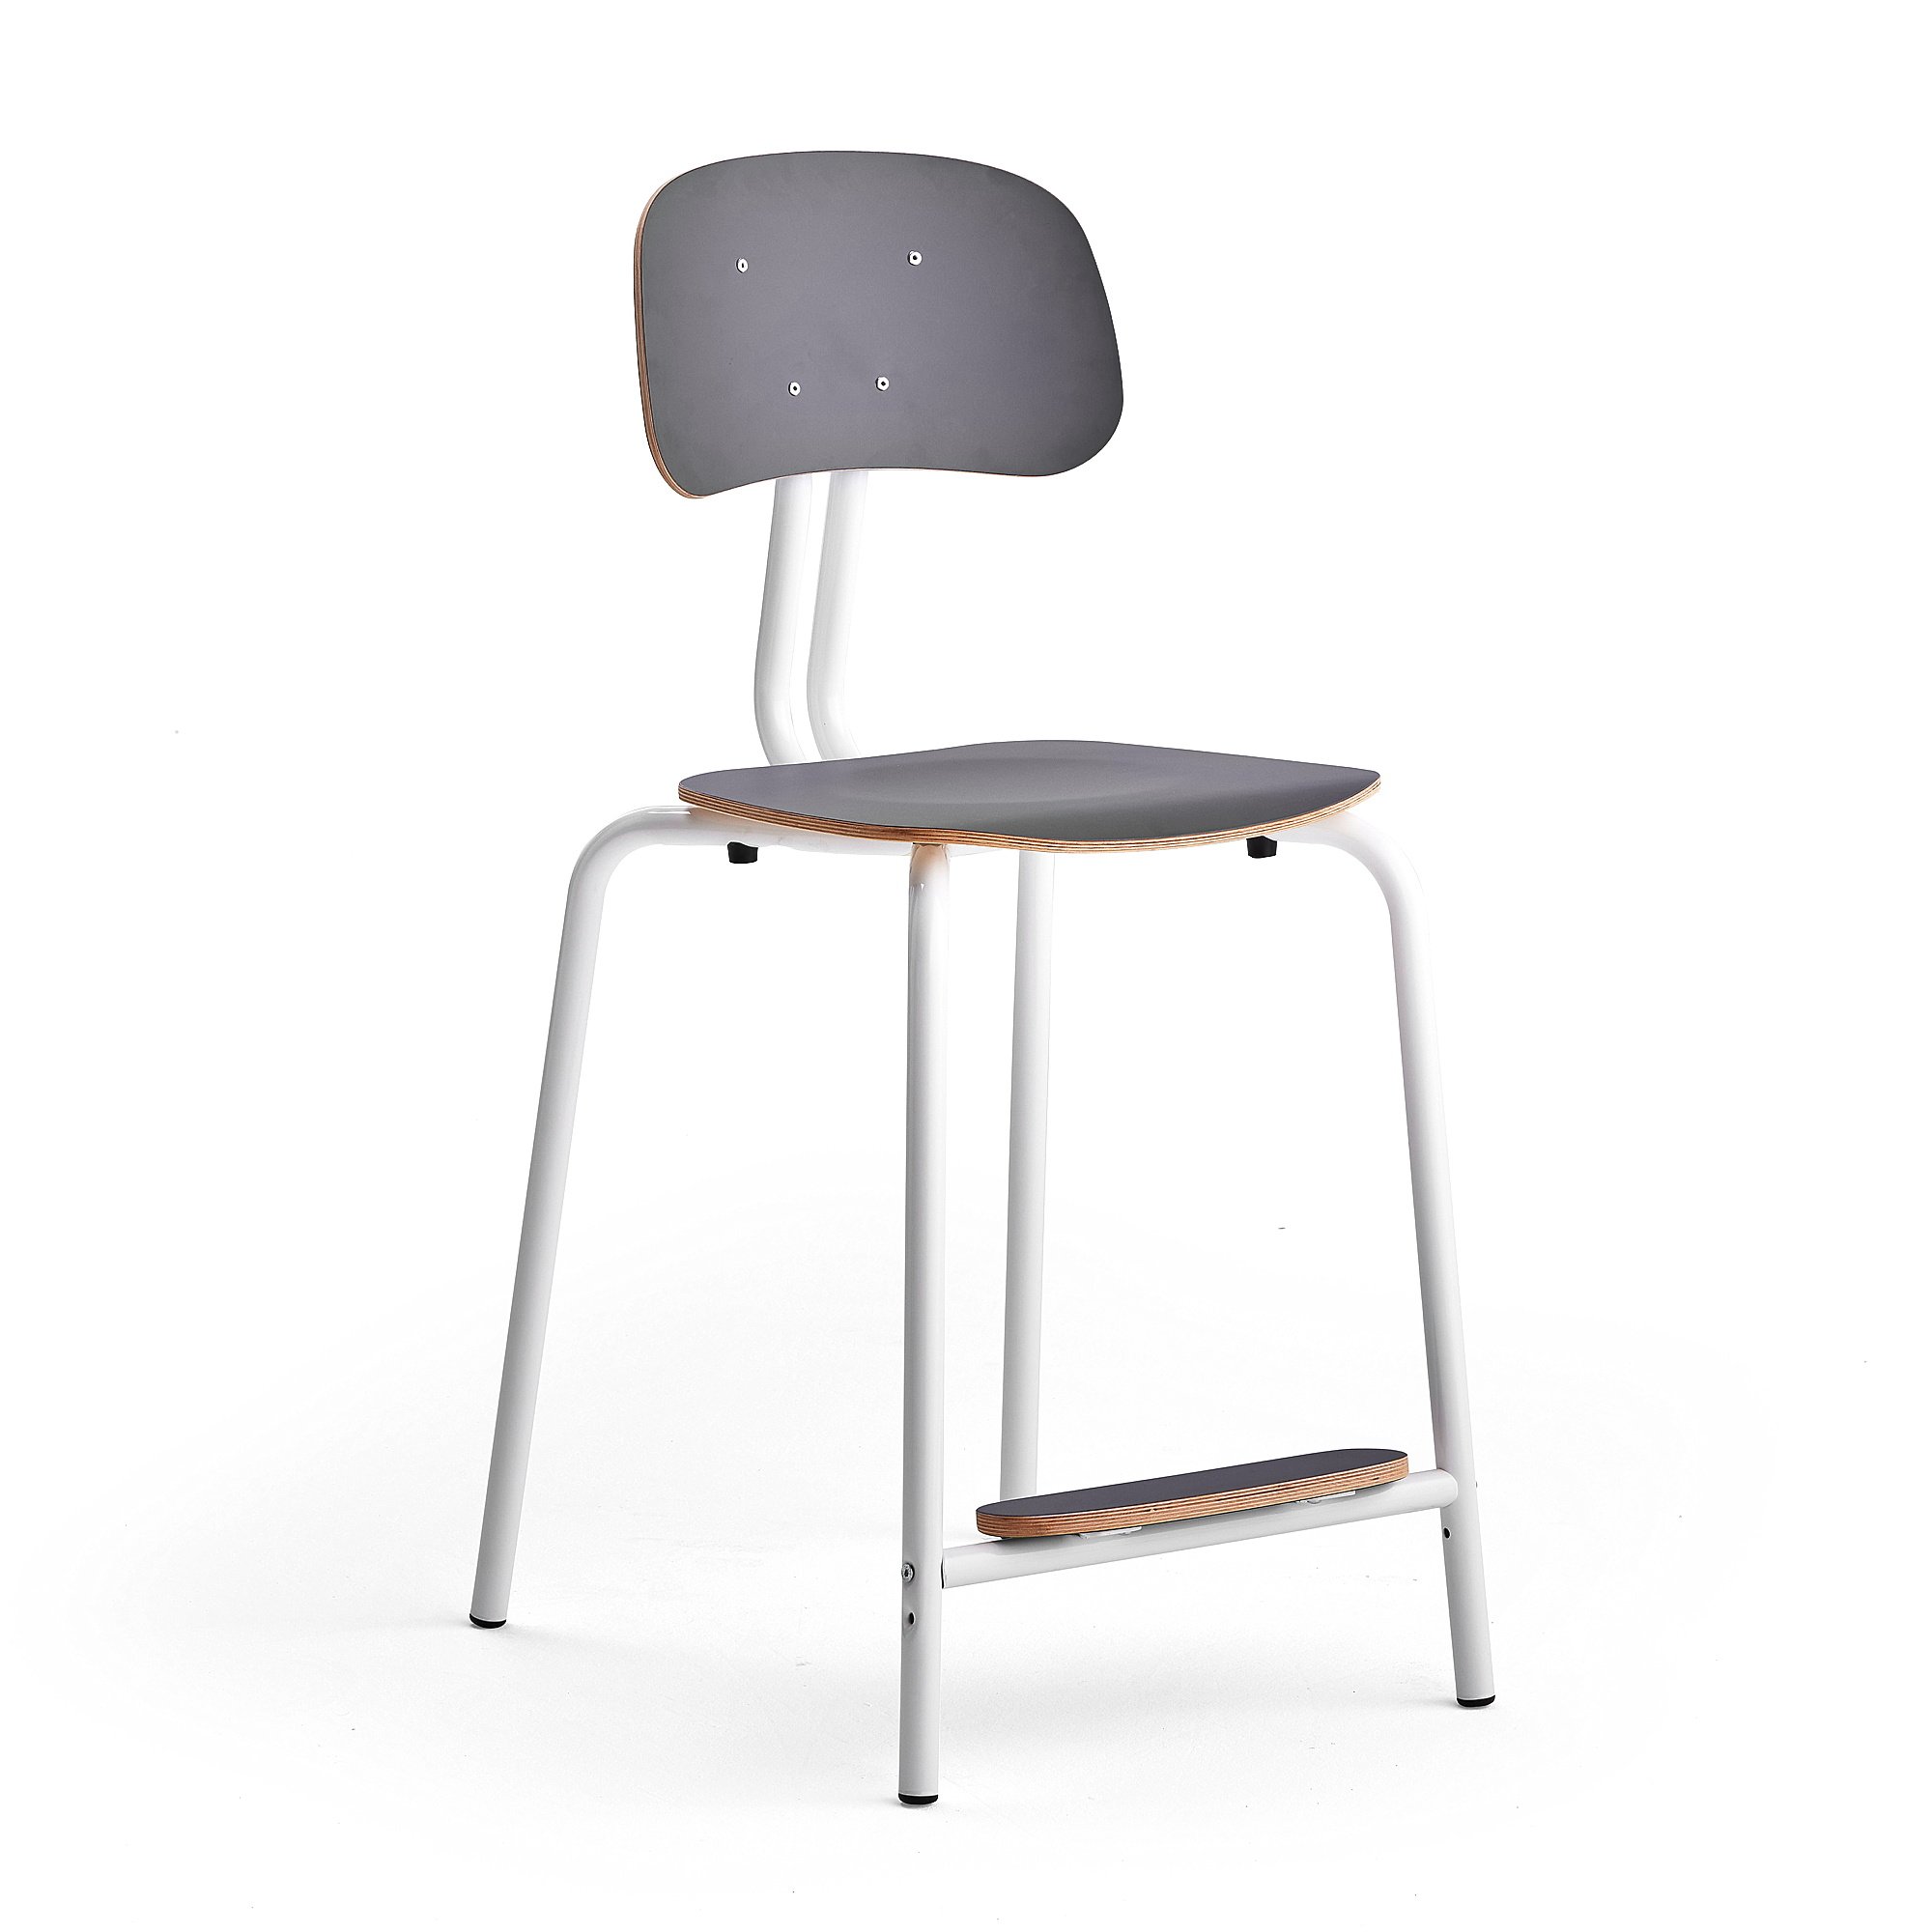 Školní židle YNGVE, 4 nohy, výška 610 mm, bílá/antracitově šedá